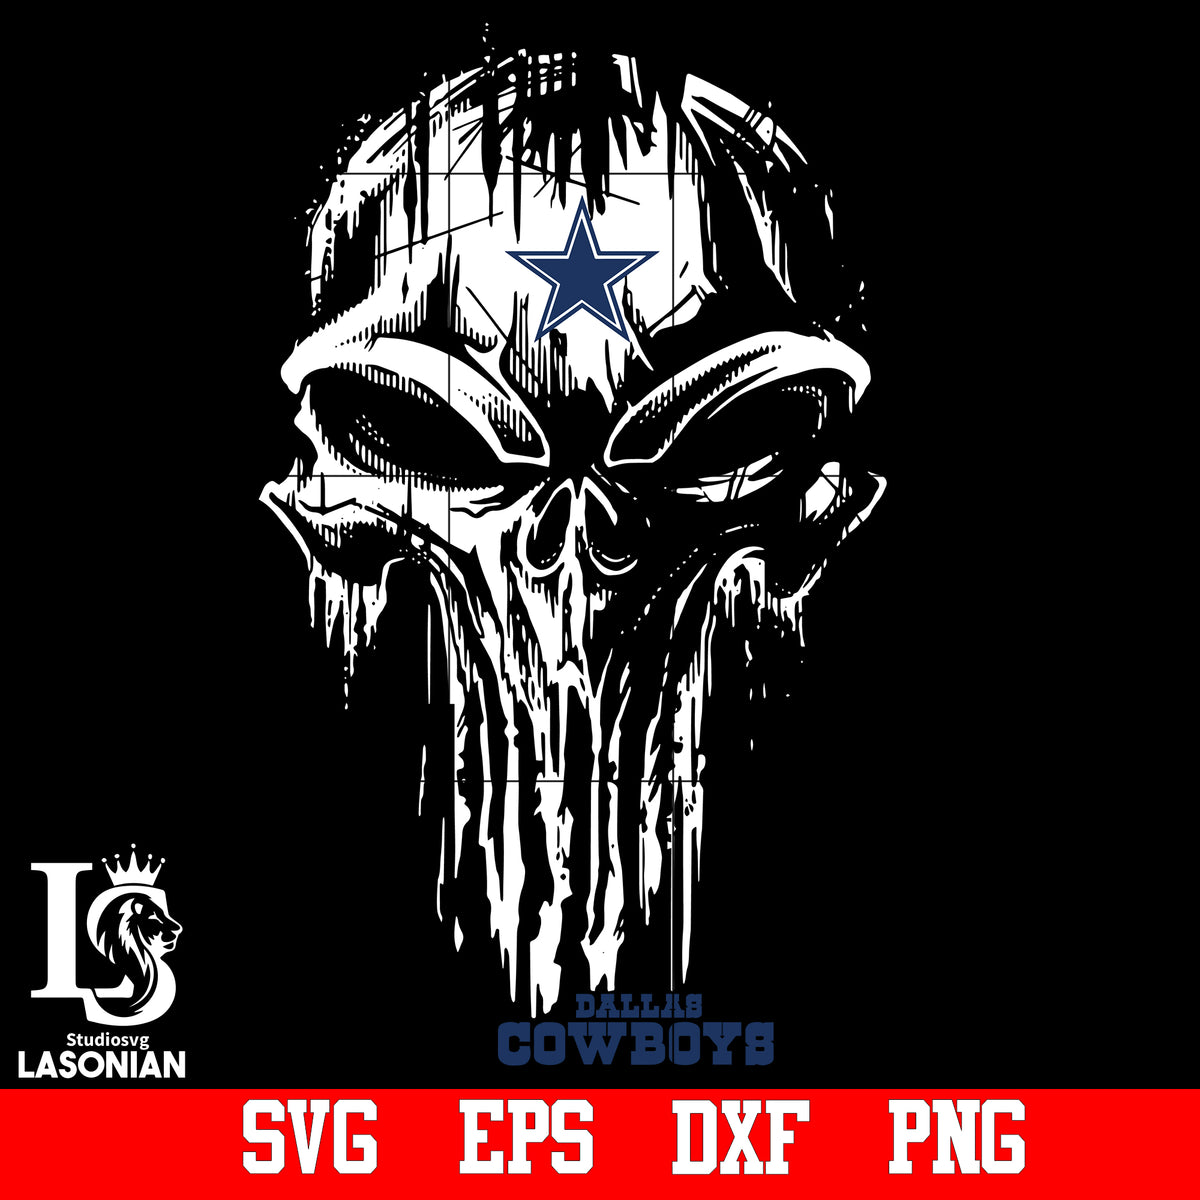 Dallas Cowboys Skull - Dallas Cowboys Skull - Sticker